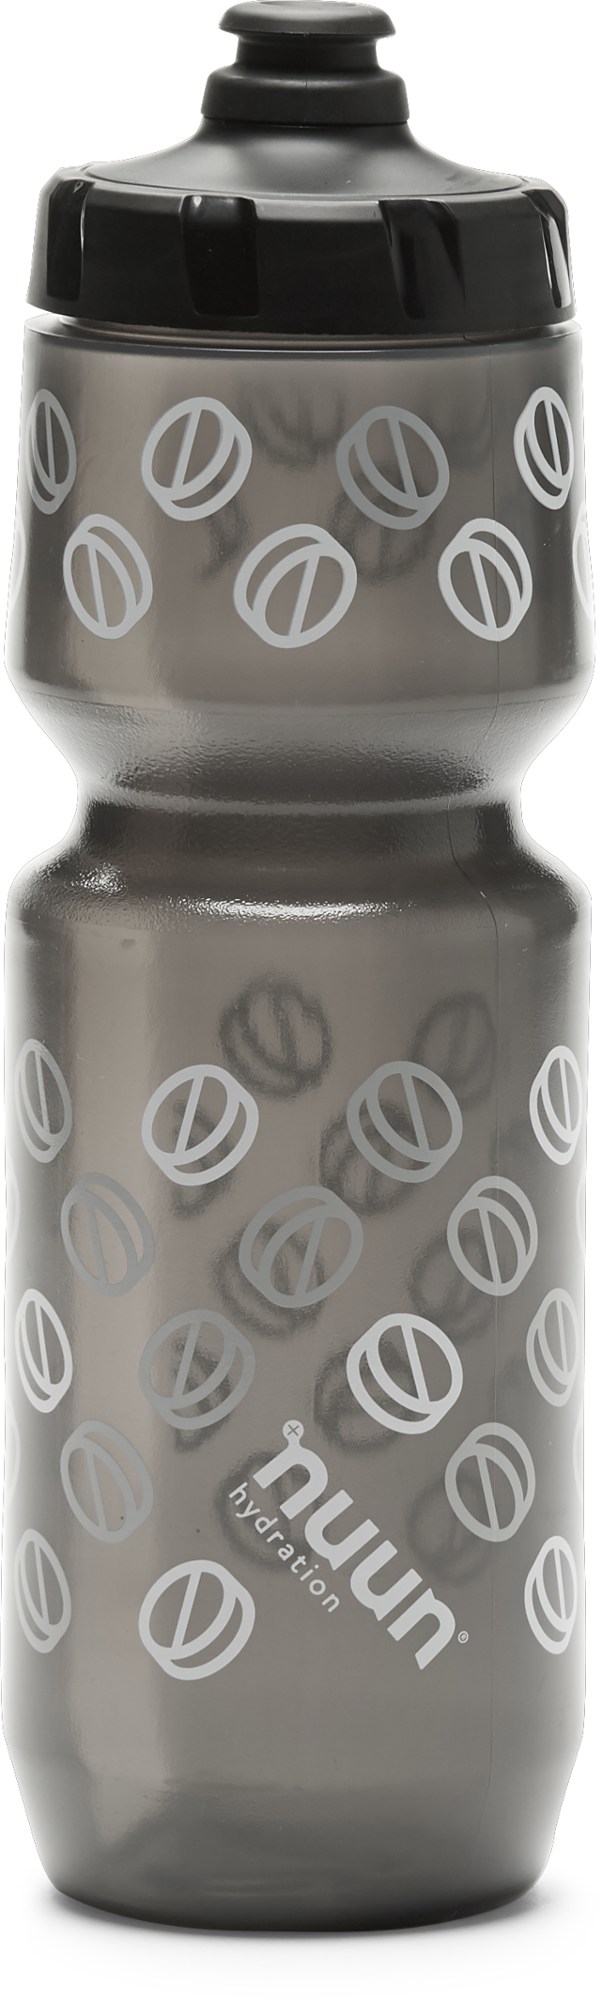 Бутылка для воды Purist - 26 эт. унция NUUN, серый